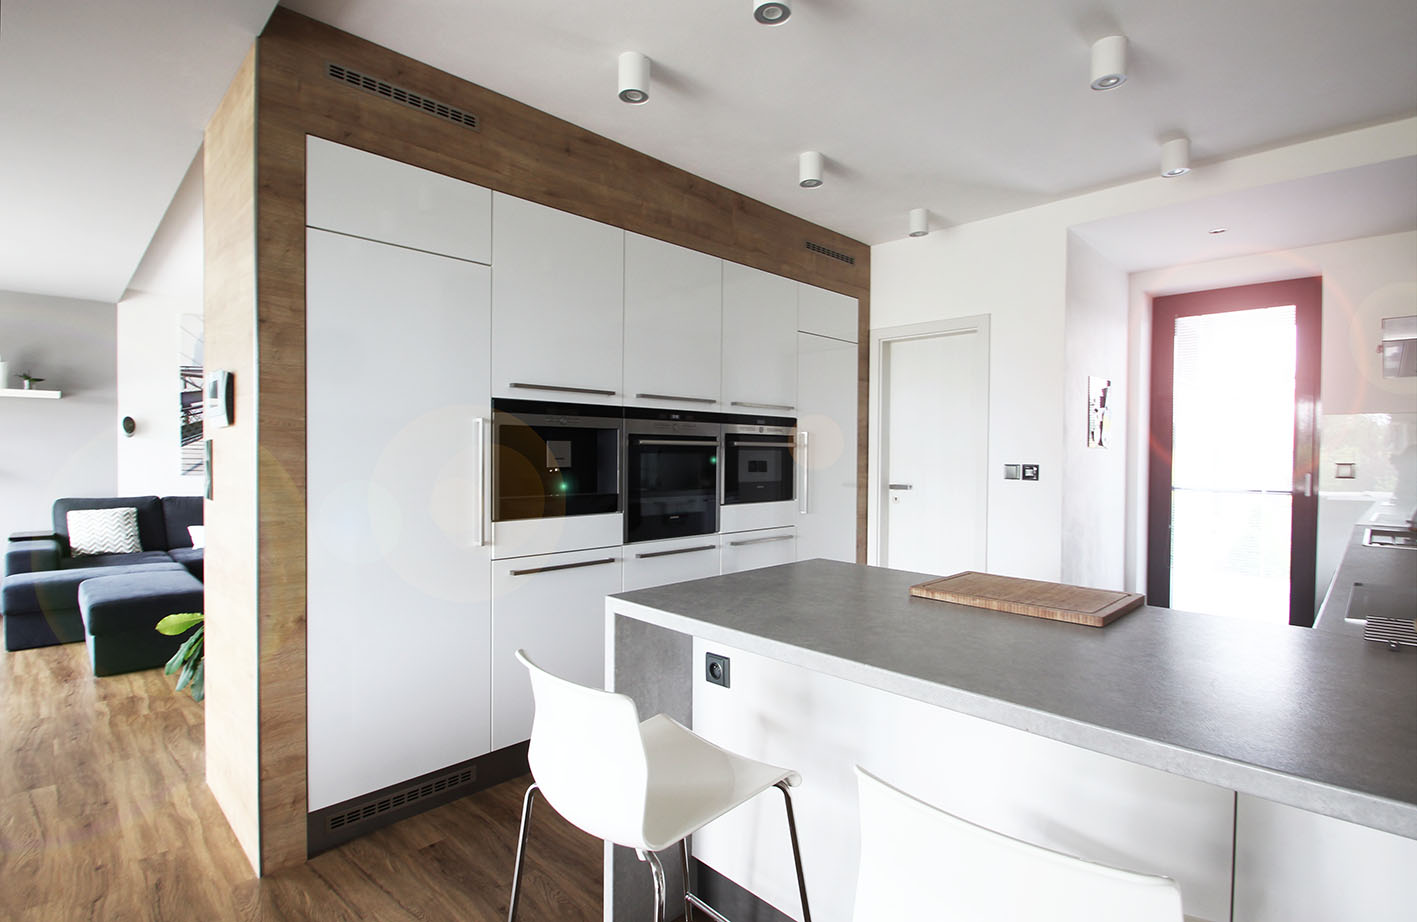 Realizace interiéru kuchyně s obývacím pokojem dle bytového architekta